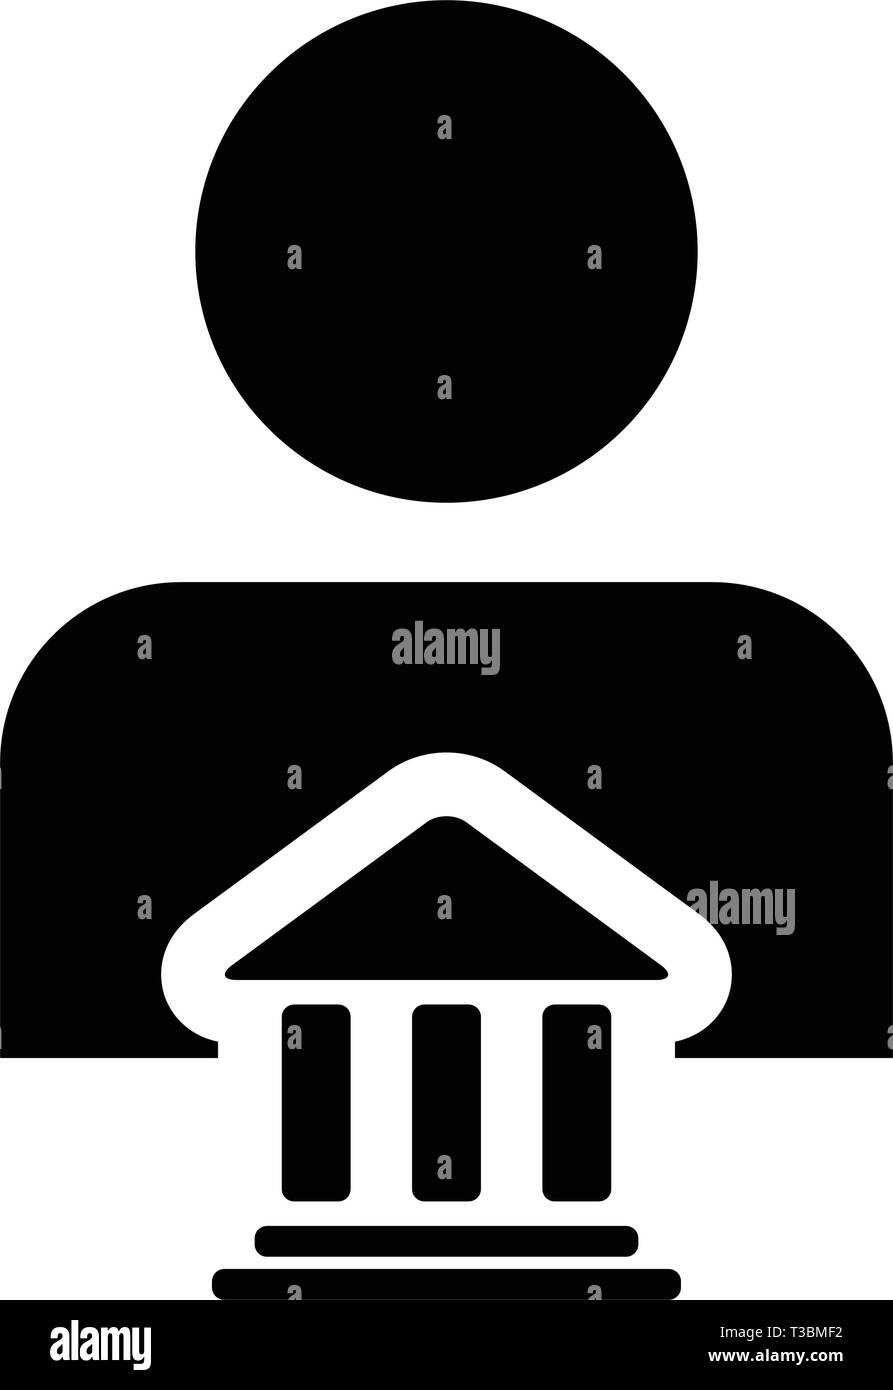 Advisor Symbol Vektor mit männliche Person Profil Avatar mit Gebäude Symbol für Banking und Finance in Glyph Piktogramm Abbildung Stock Vektor